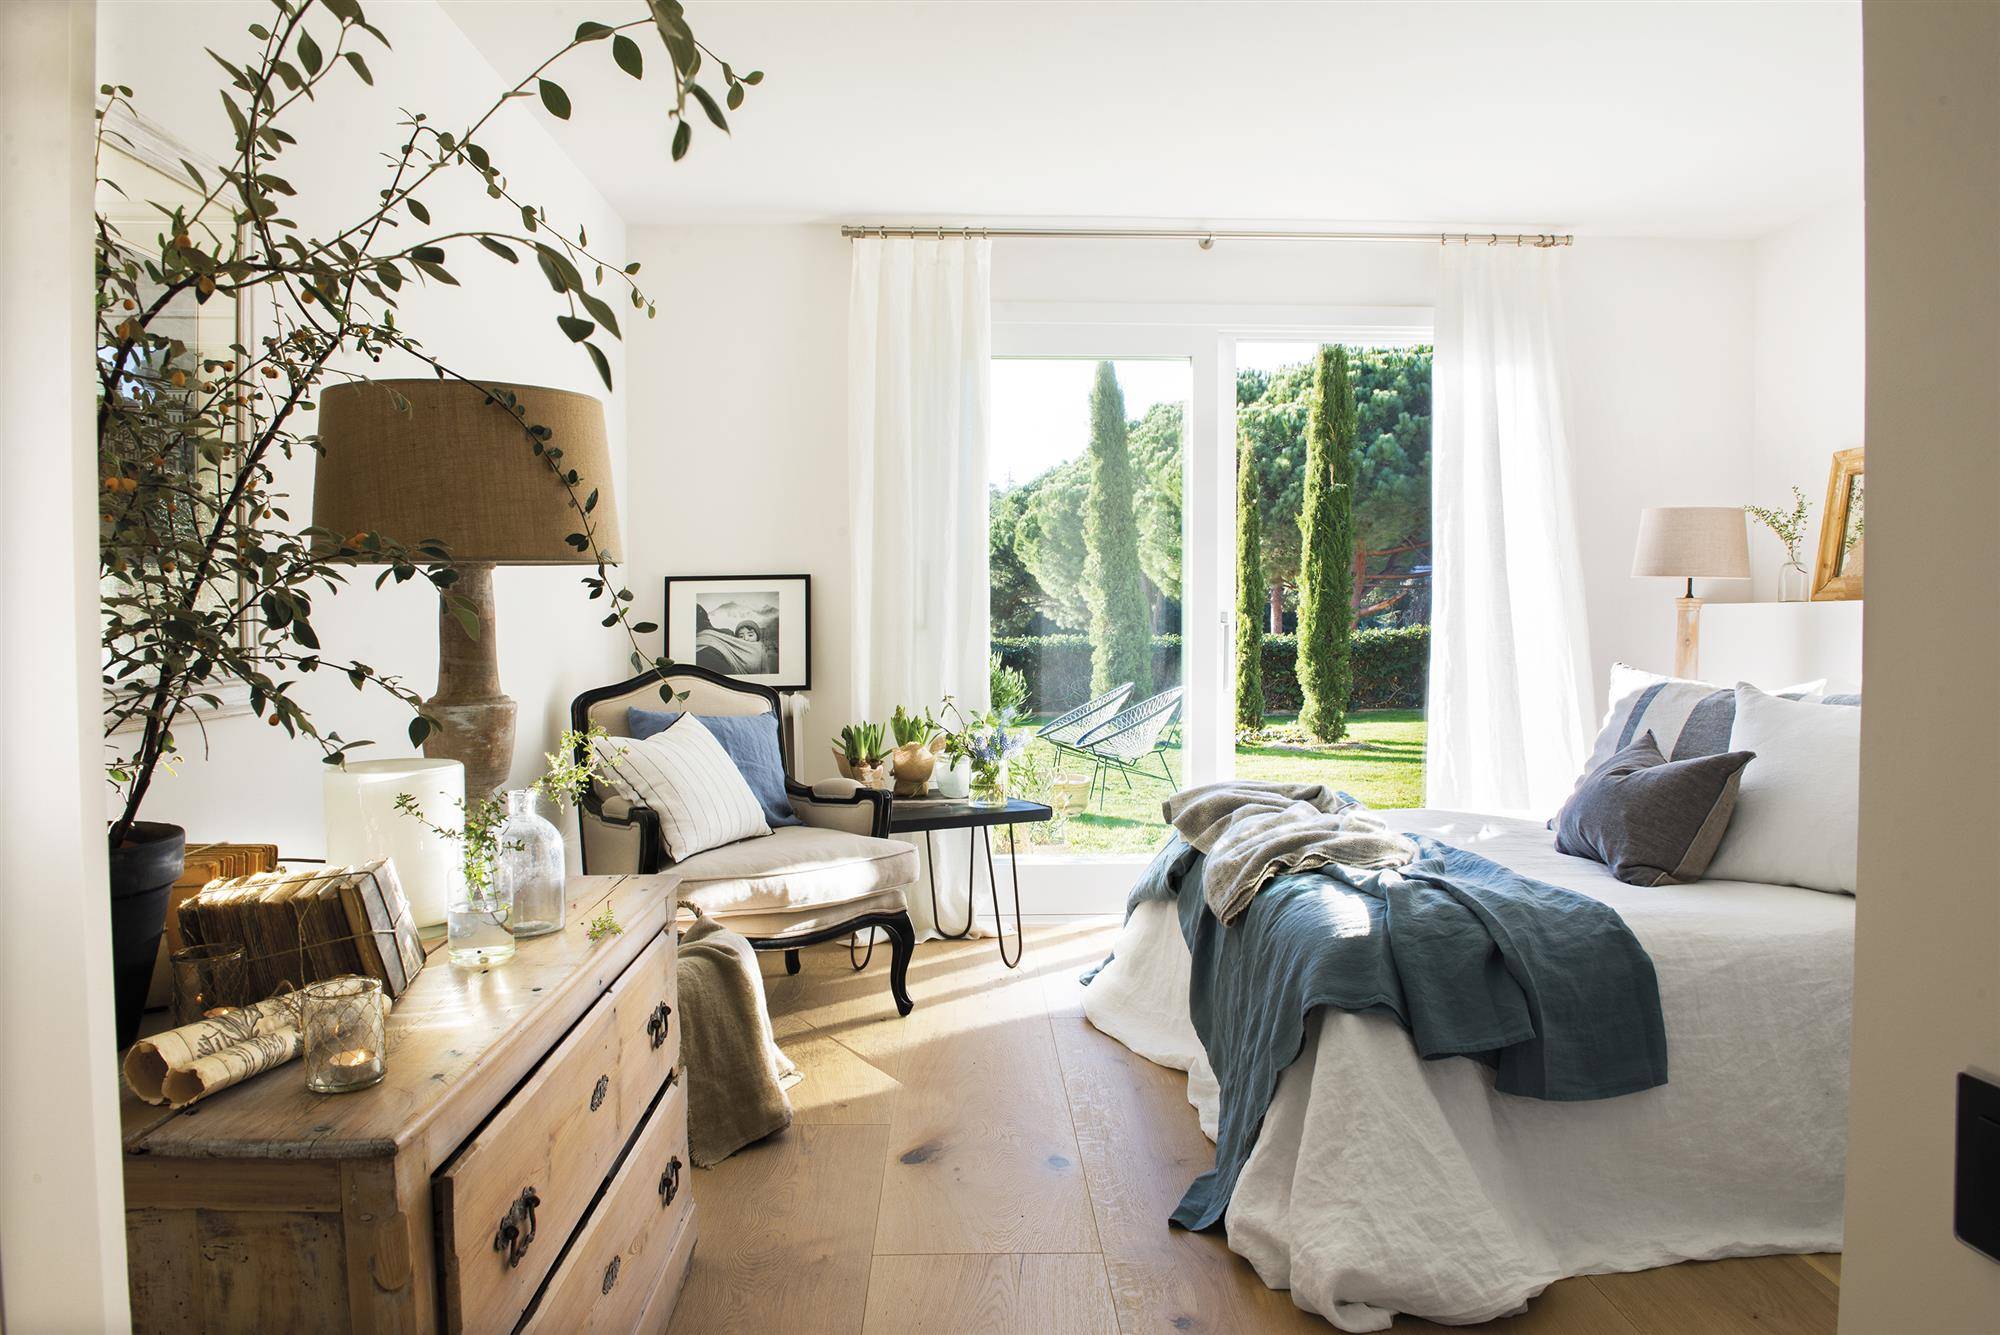 Dormitorio de verano clásico con cómoda de madera vintage, ropa de cama de lino en color blanco y azul, butaca tipo poltrona clásica y ventanas con acceso al jardín DSC2141